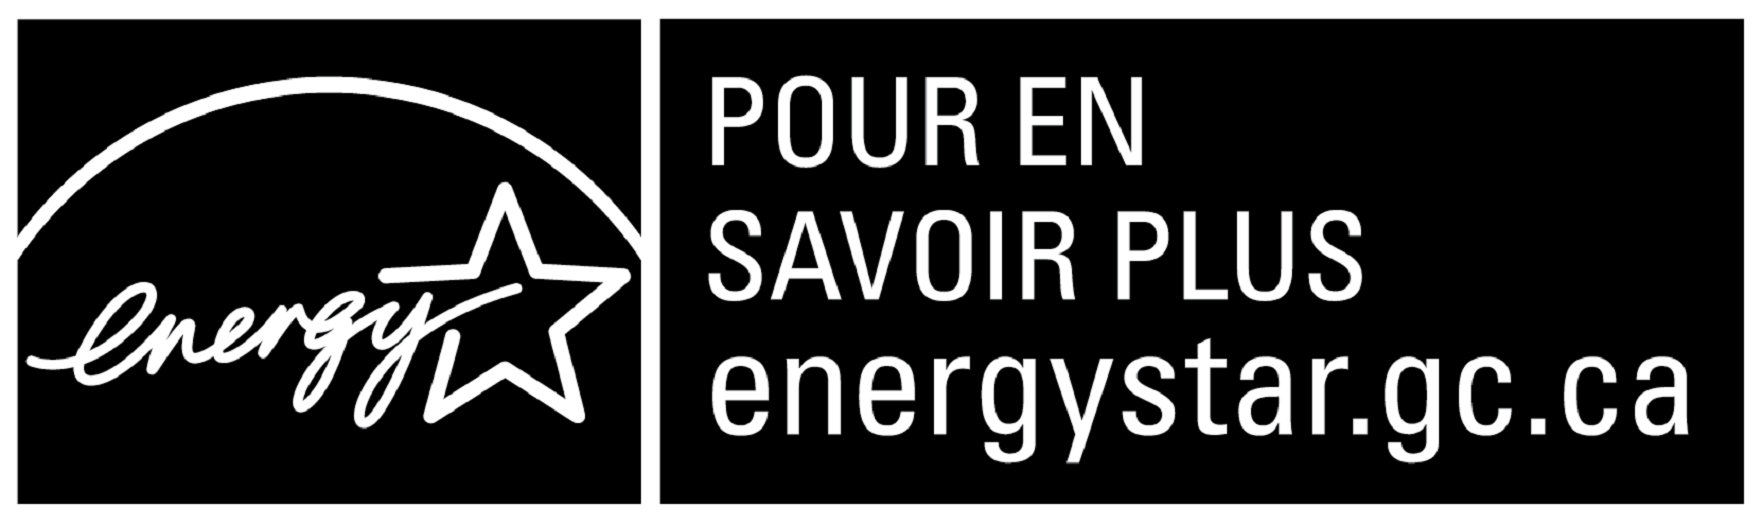 Le symbol POUR EN SAVOIR PLUS energystar.gc.ca, horizontal noir 